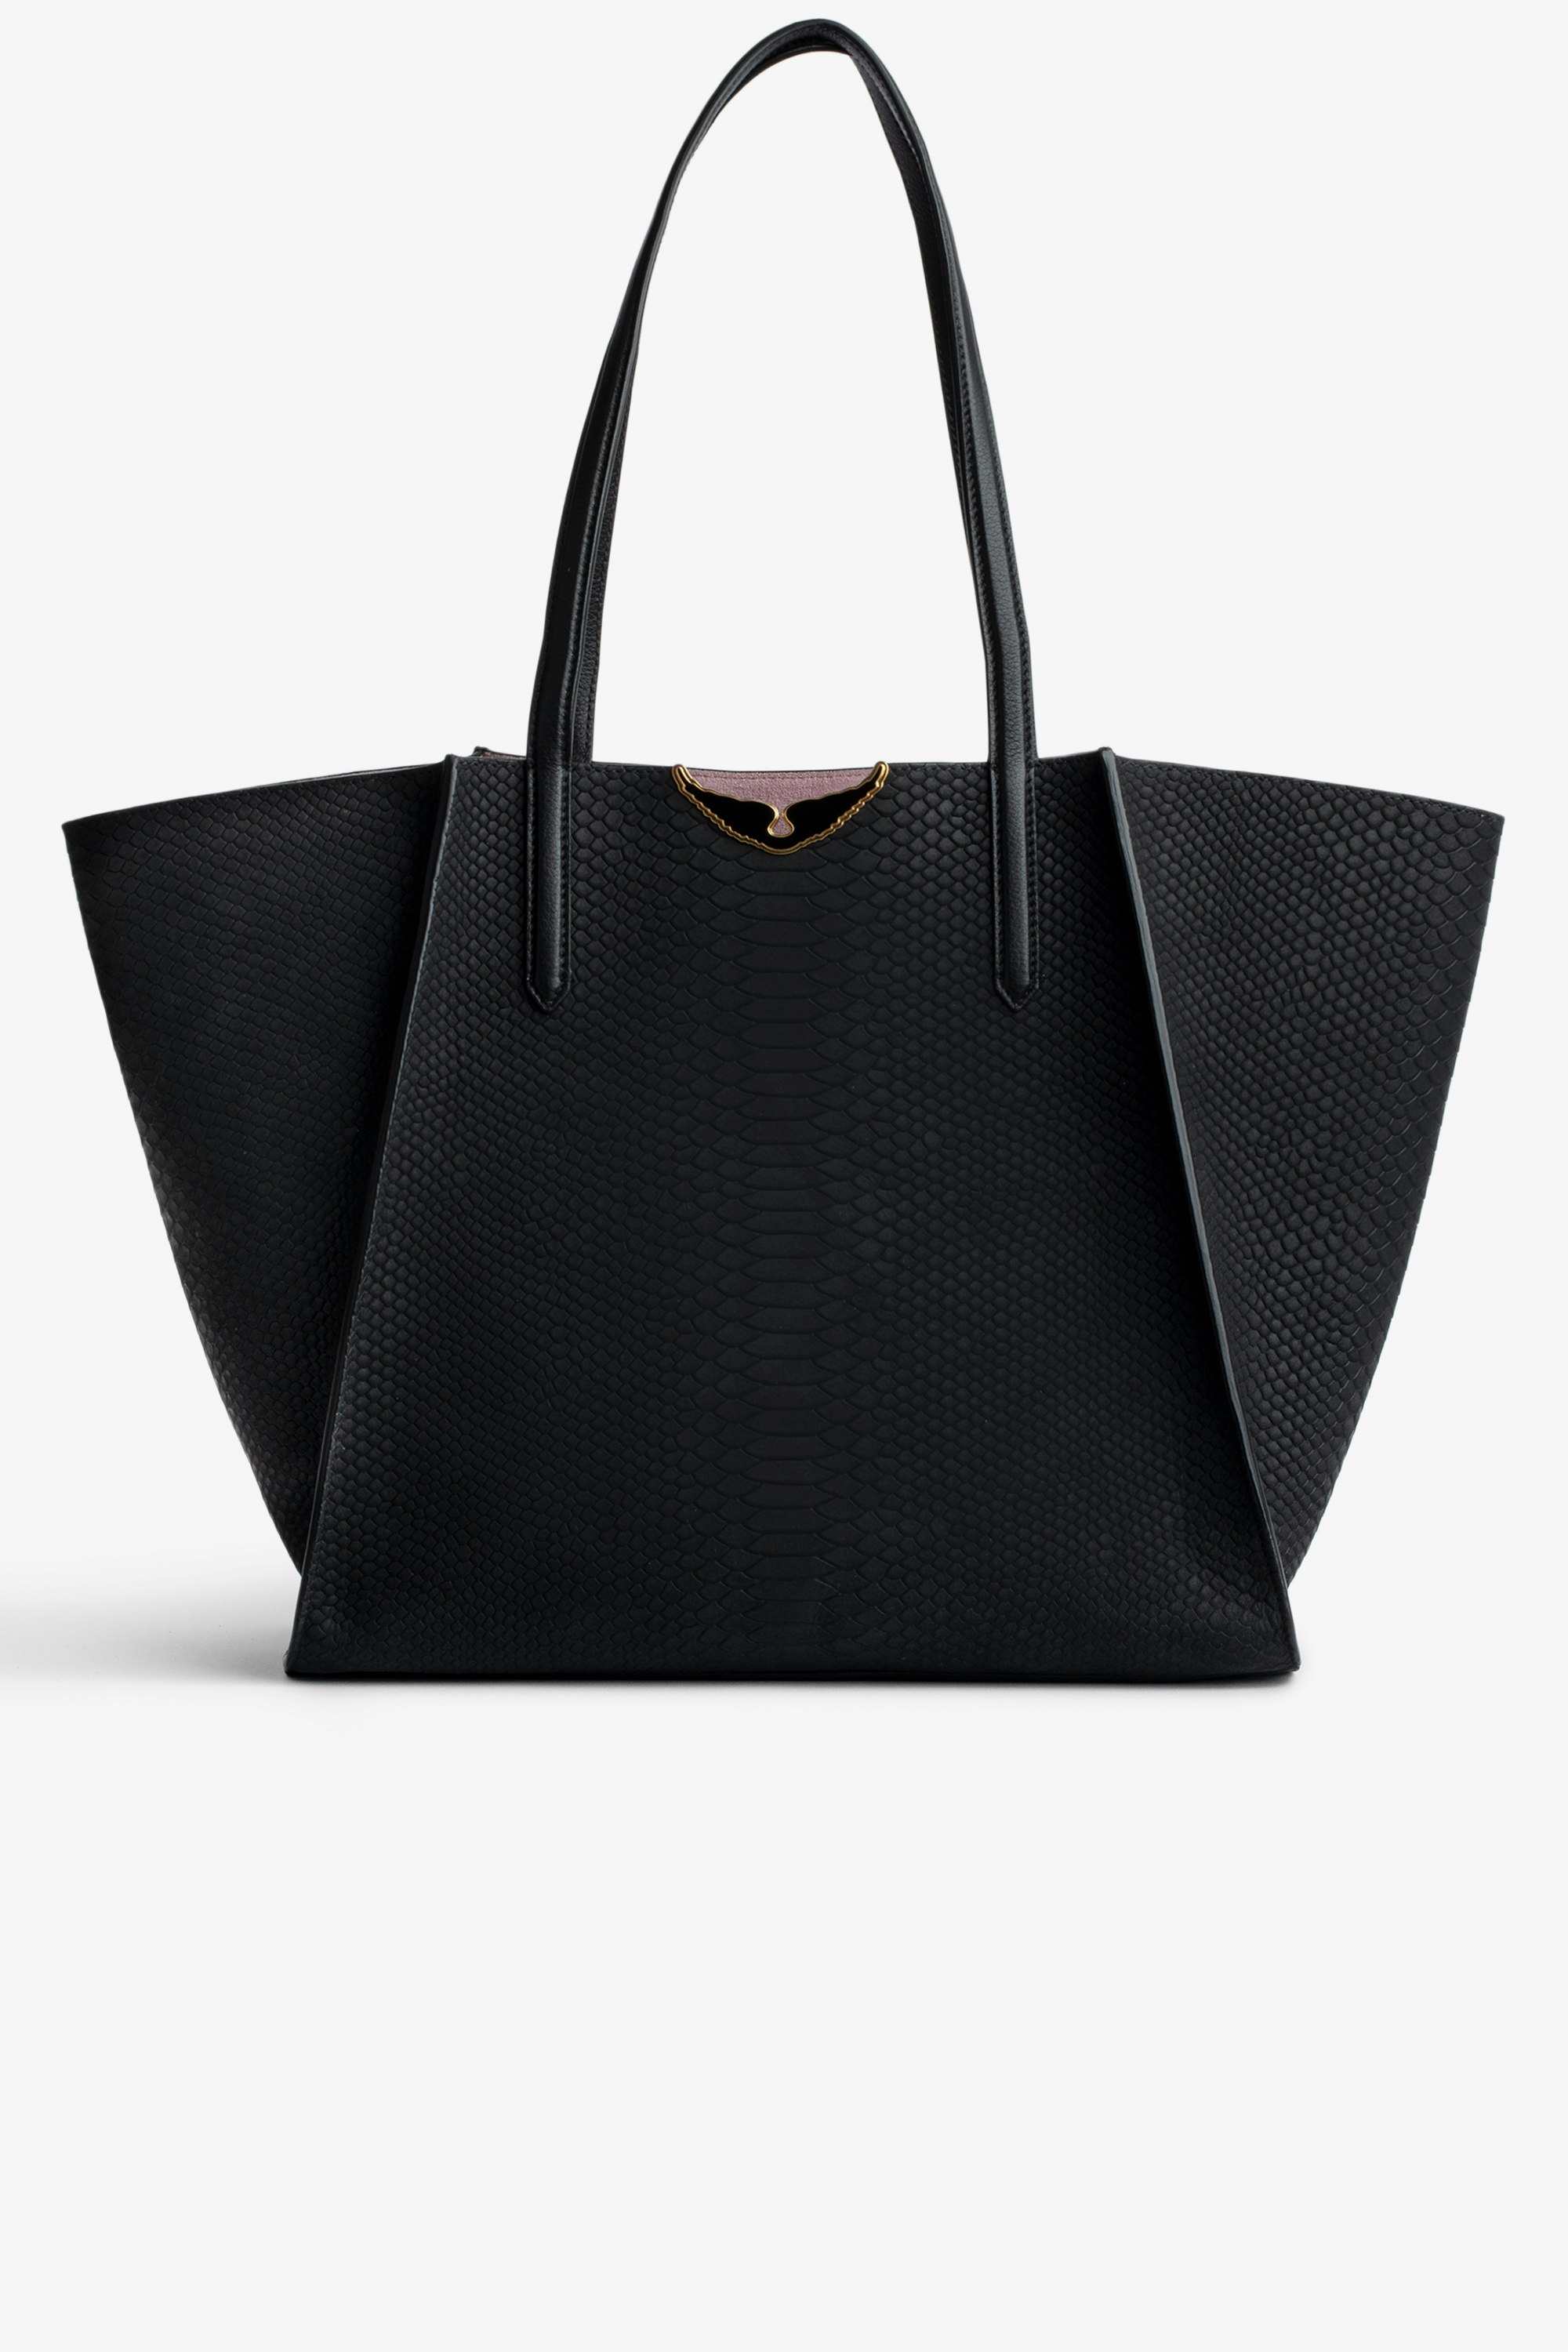 Tasche Le Borderline Soft Savage  - Damen-Shopper zum Wenden aus schwarzem Leder in Python-Optik und rosafarbenem Veloursleder mit schwarz lackierten Flügeln.